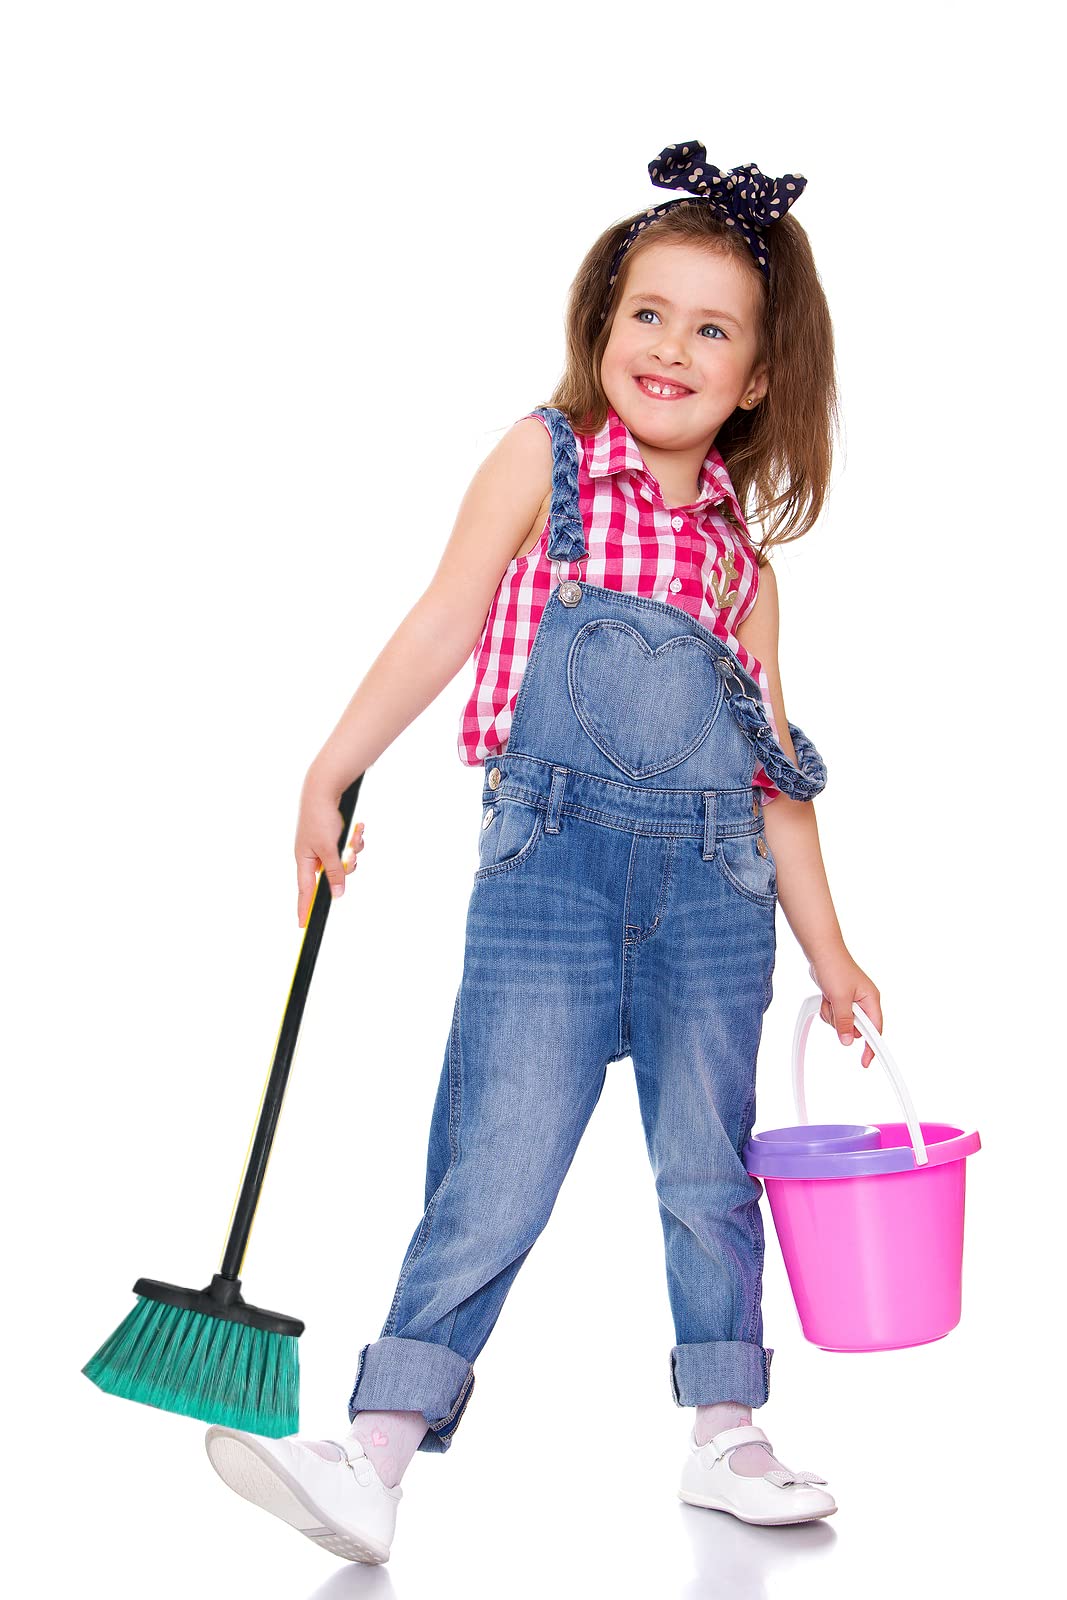 Set of 3 Kids Mini Short Sweeper Push Broom for Indoor Outdoor with Industrial Grade Fibers - Assorted Colors